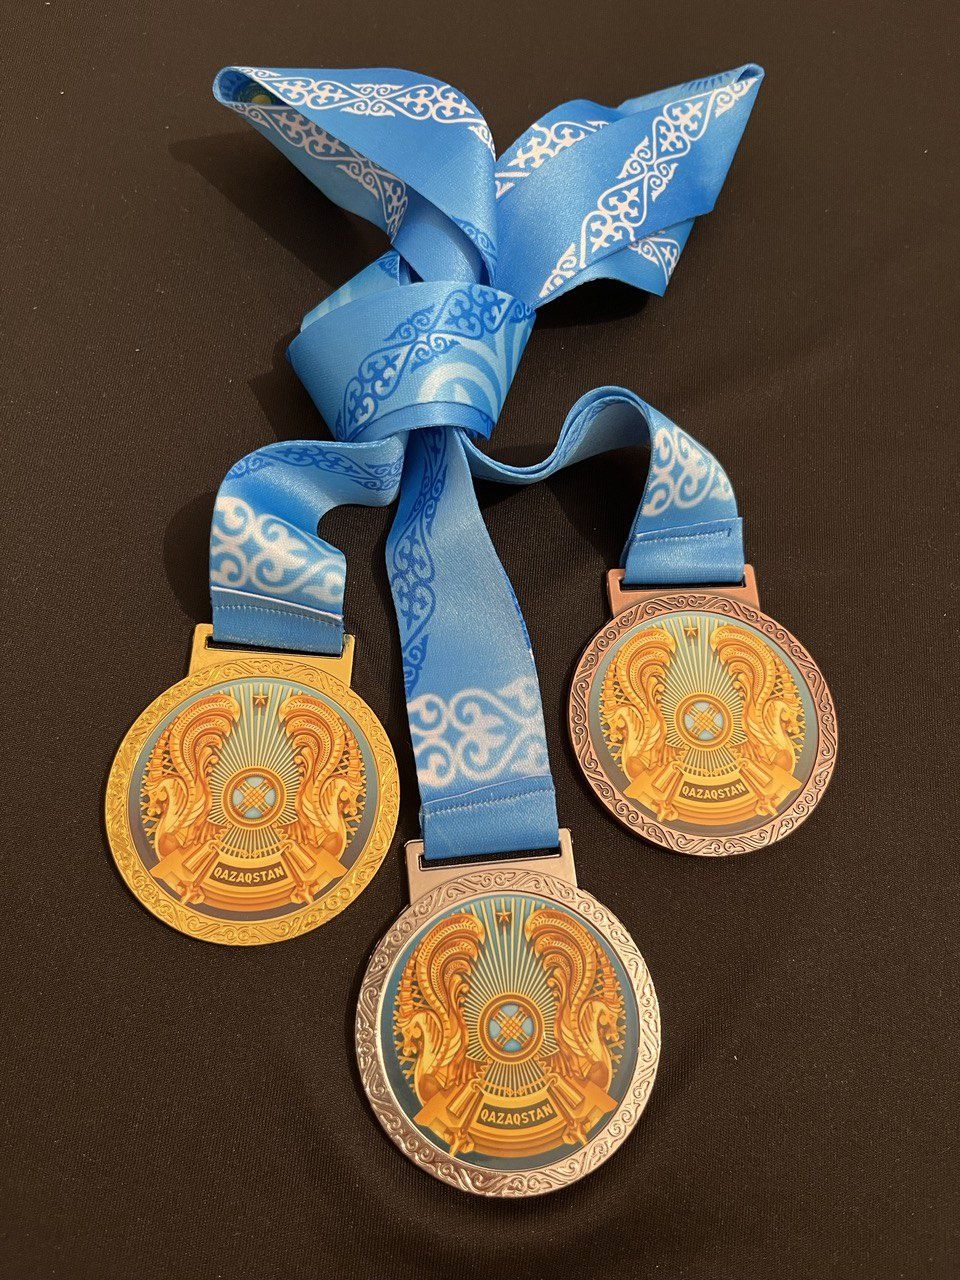 Спортивная медаль награда за личное или командное достижение